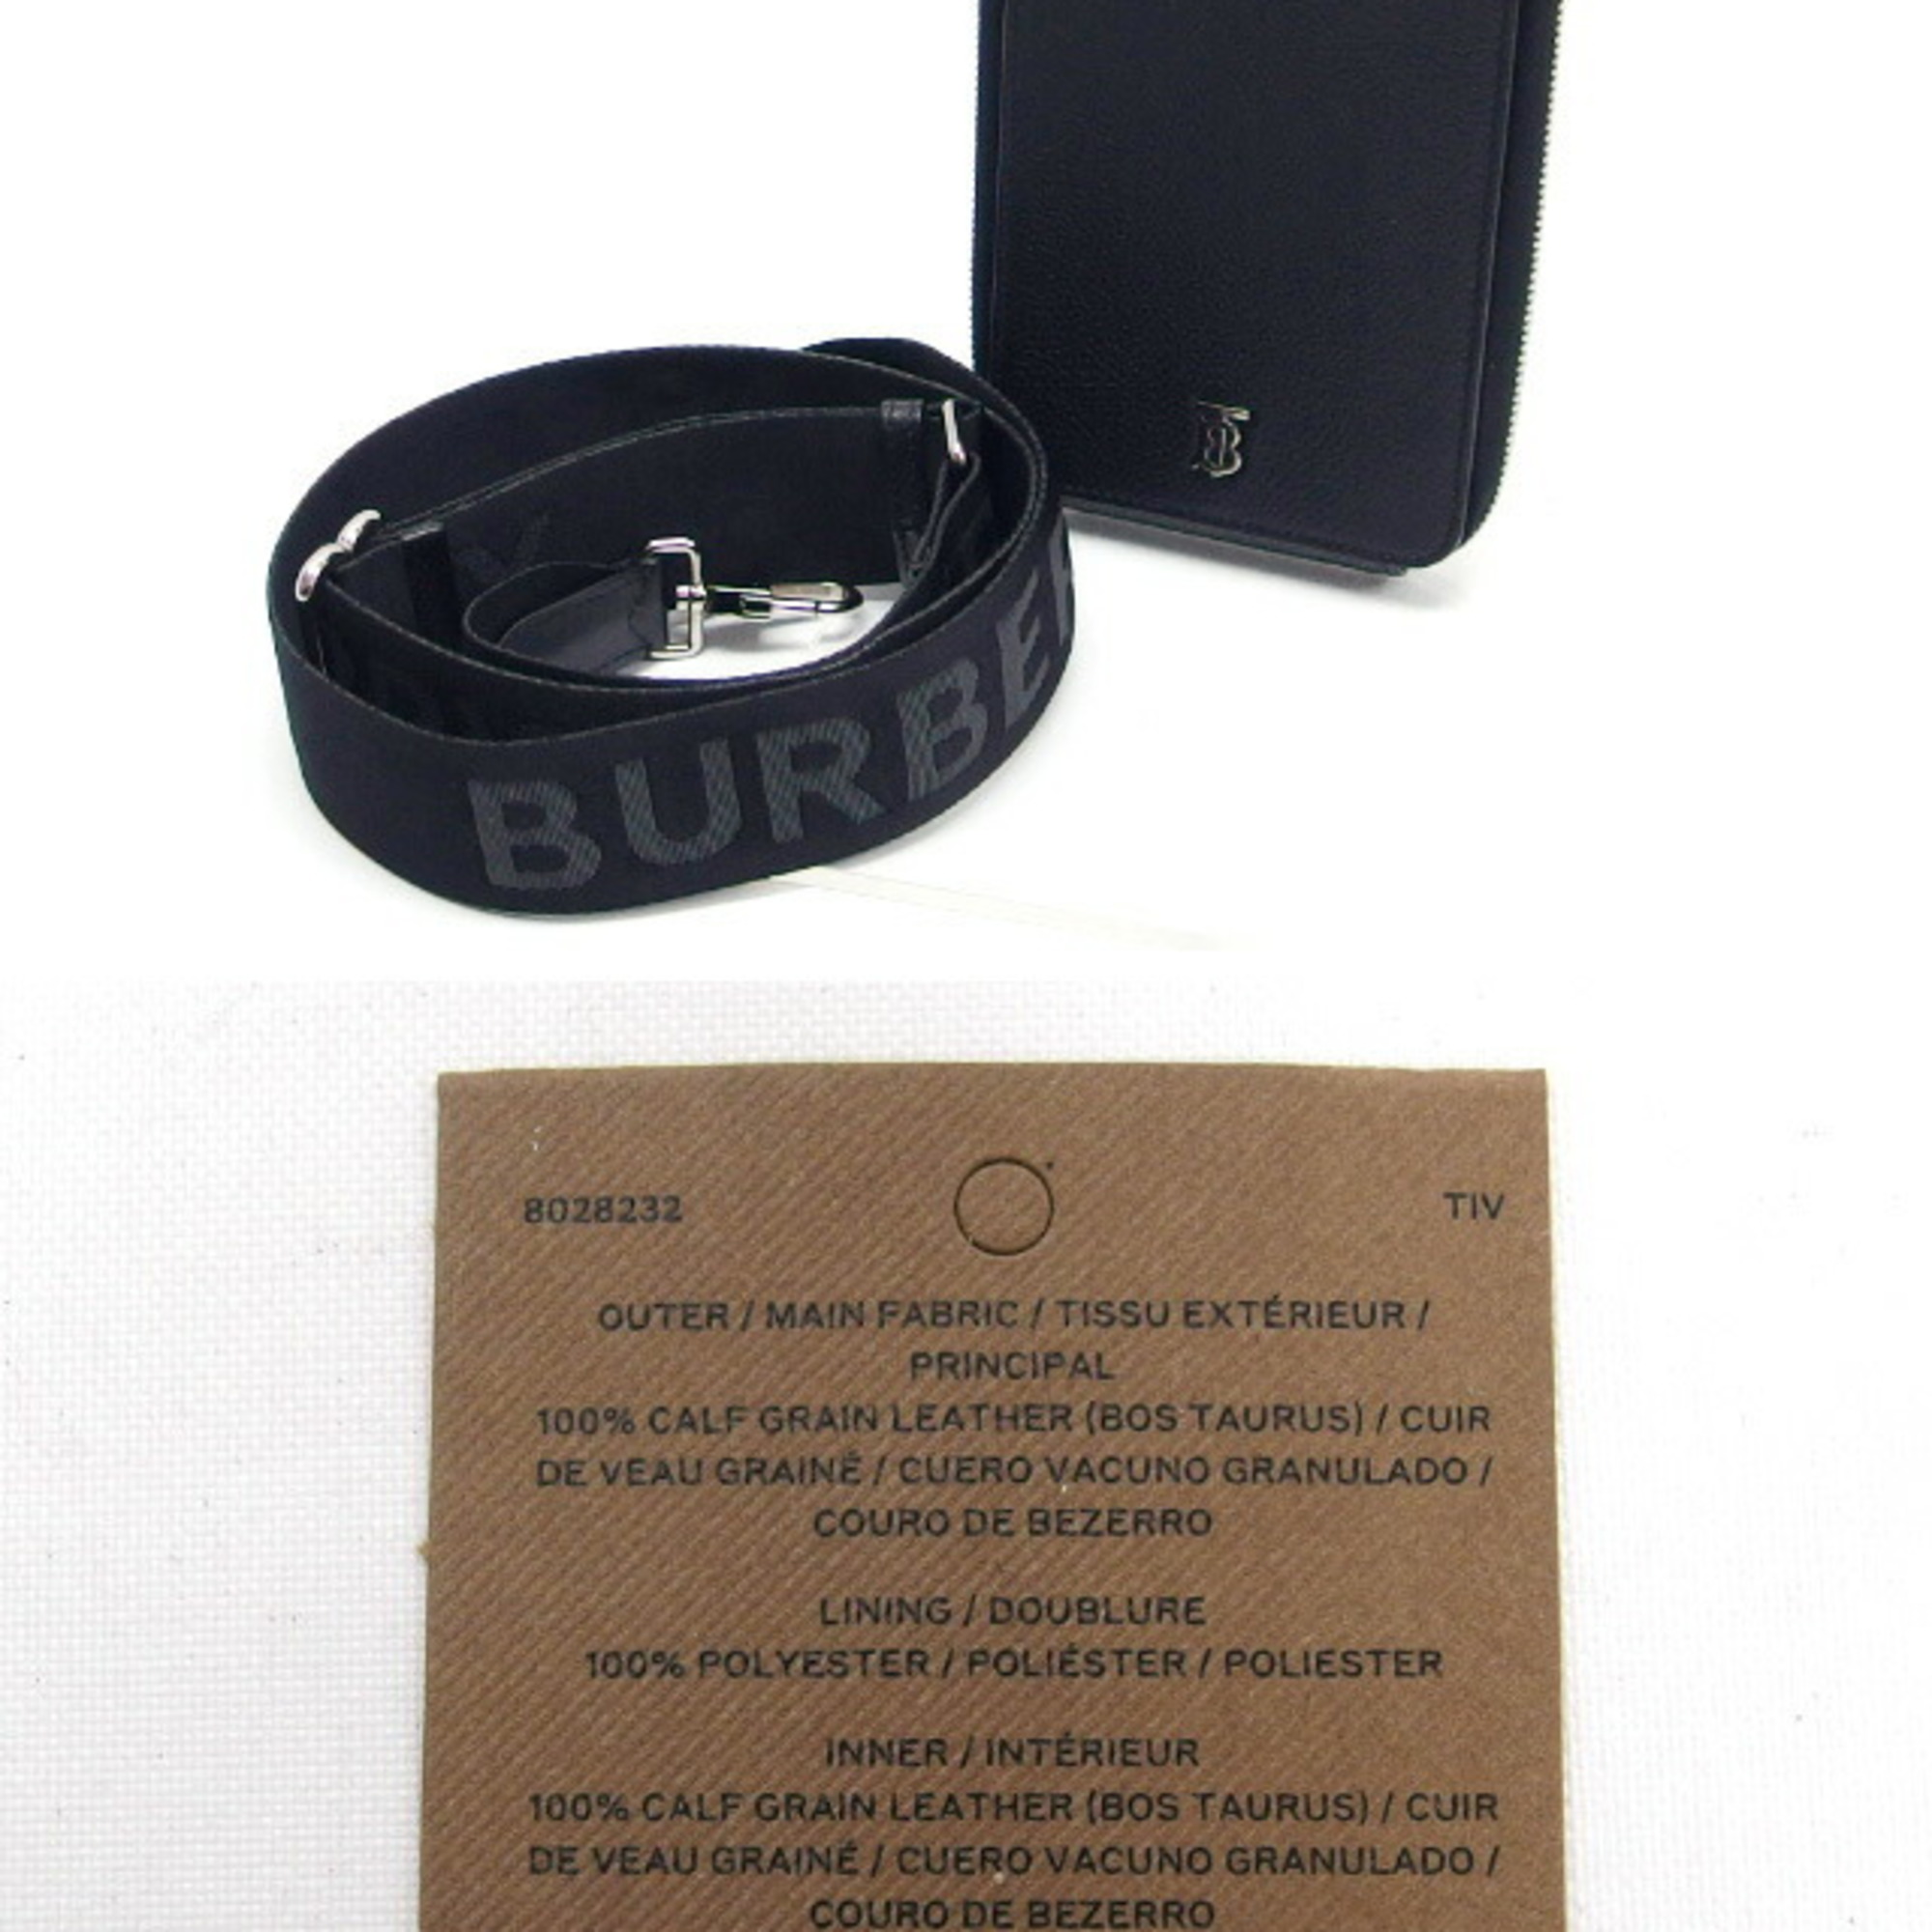 Burberry Phone Bag Shoulder Leather Black